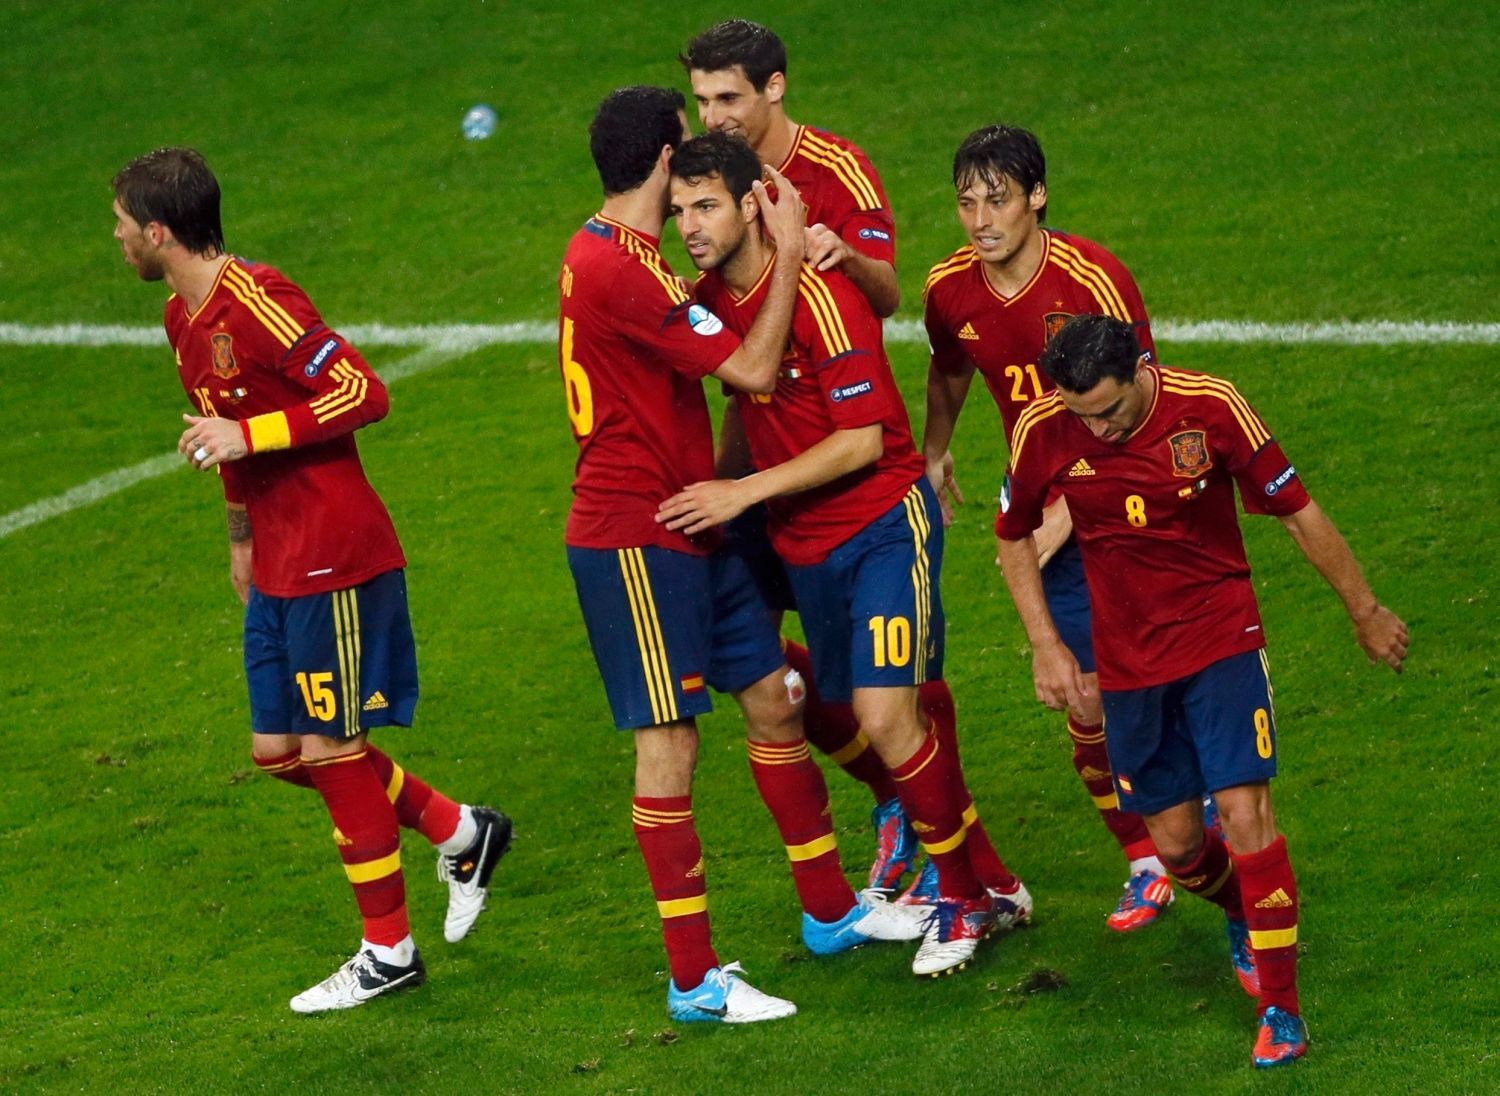 Cesc Fabregas v utkání Španělska s Irskem ve skupině C na Euru 2012